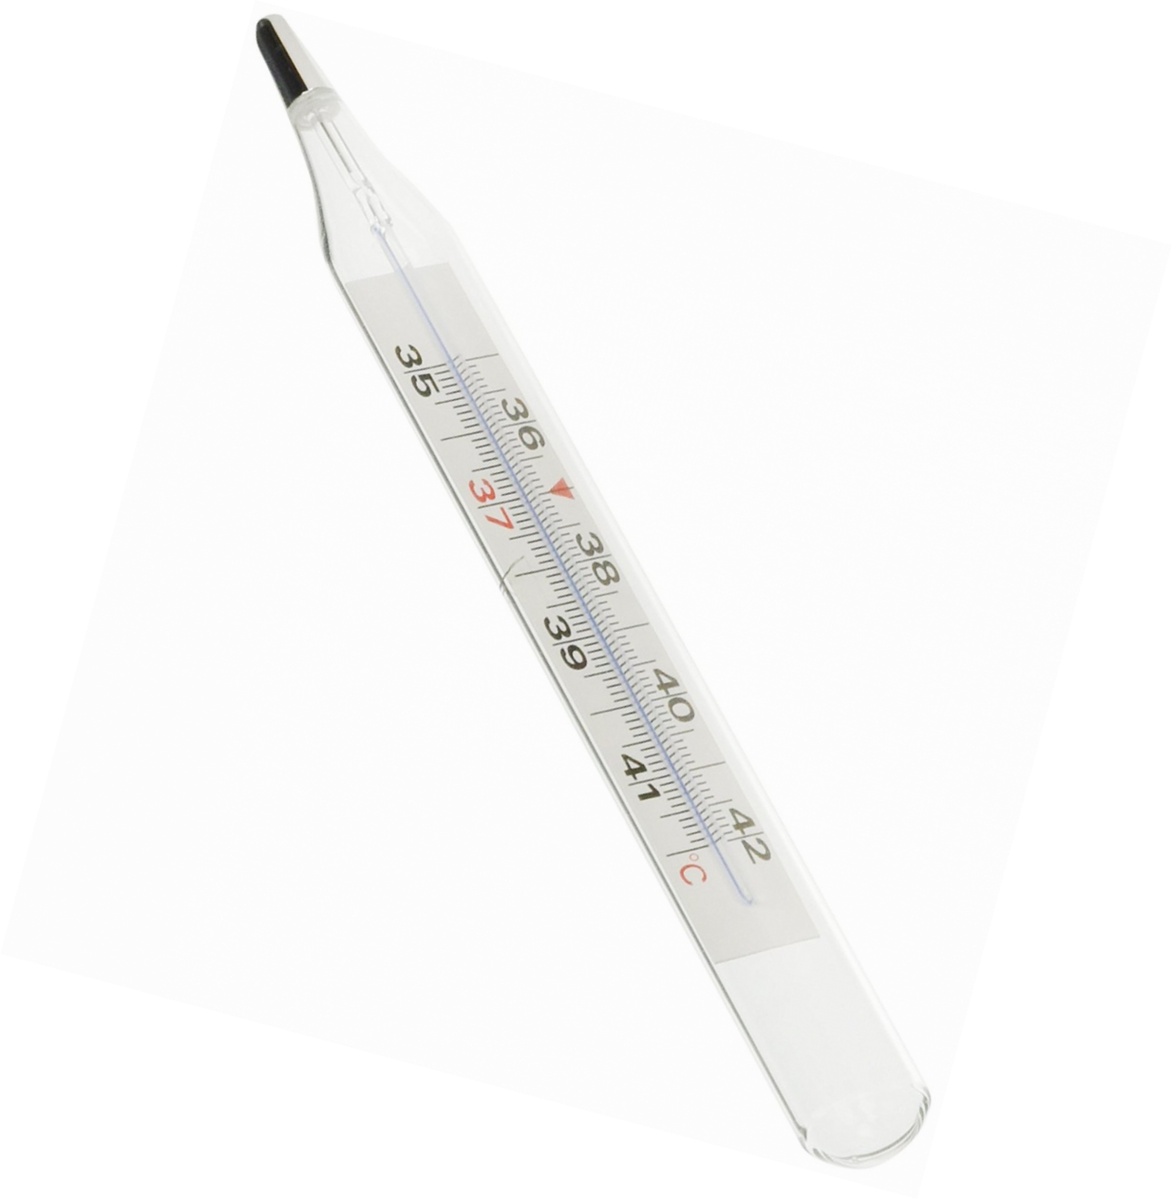 Gima 25586 Thermometre Clinique/fievre ....